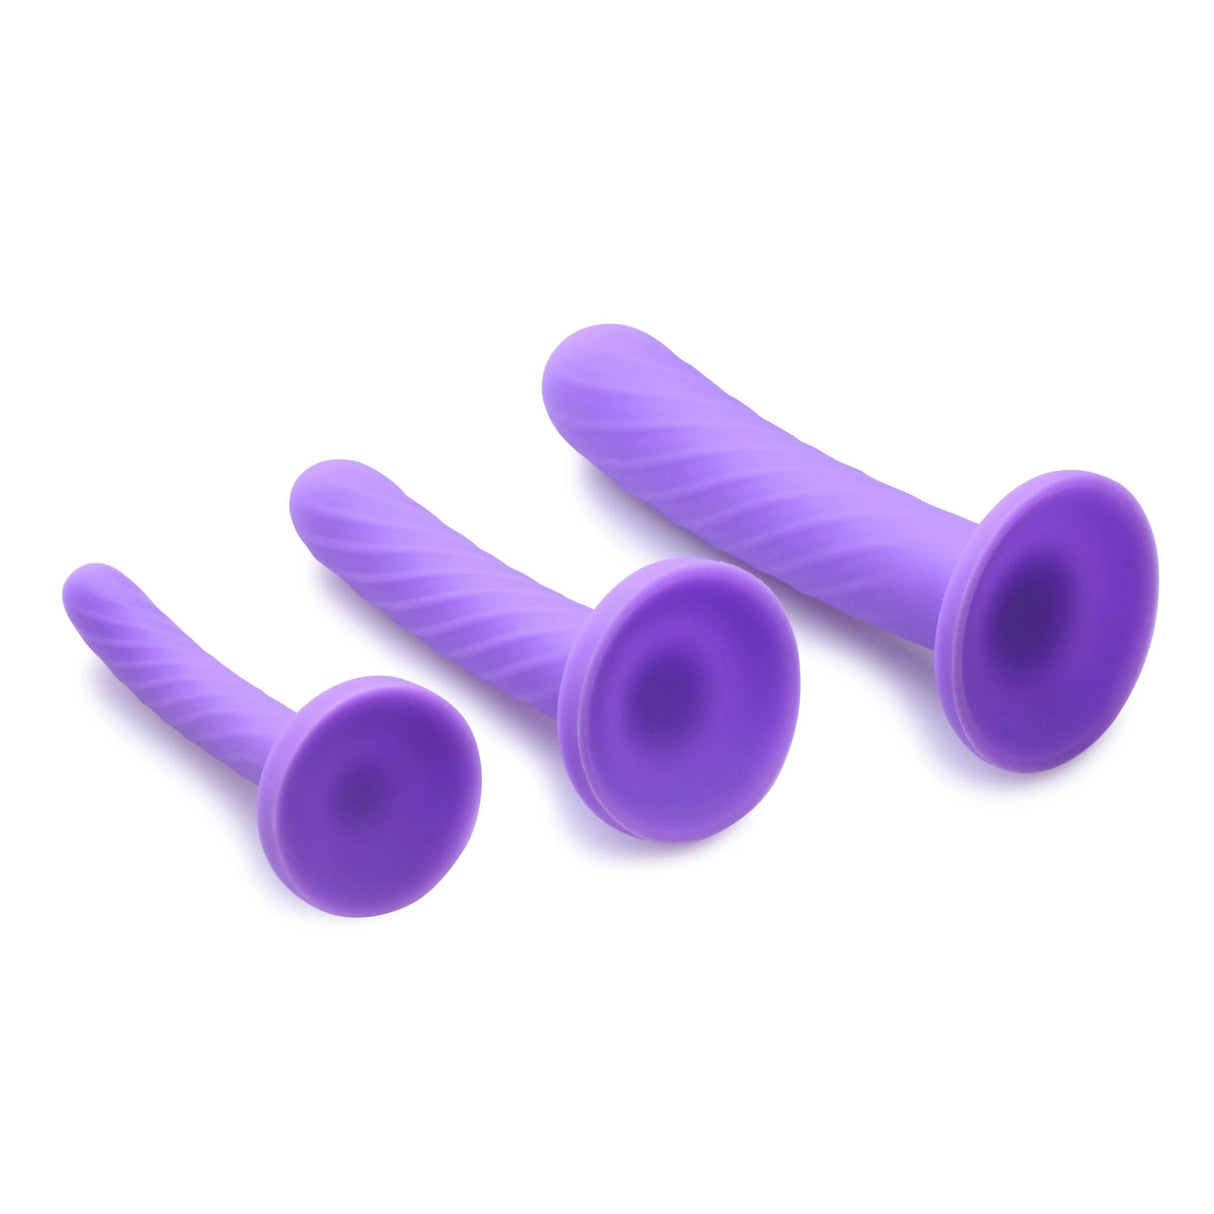 Strap U Strap On Dildo Set of 3 - Purple